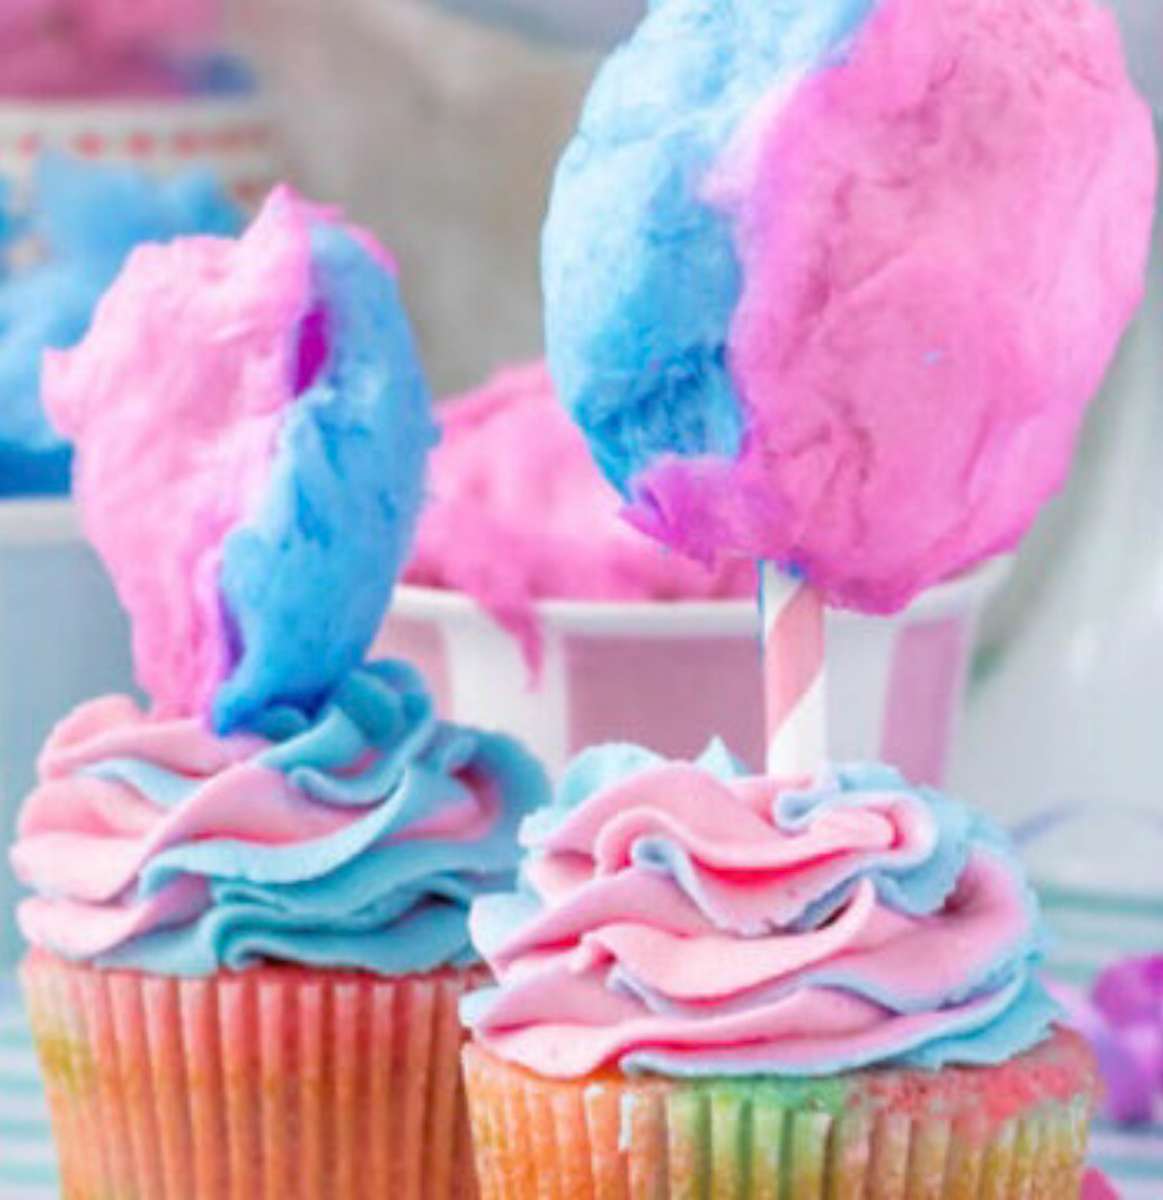 Cupcakes allo zucchero filato❤️❤️❤️❤️❤️ puzzle online